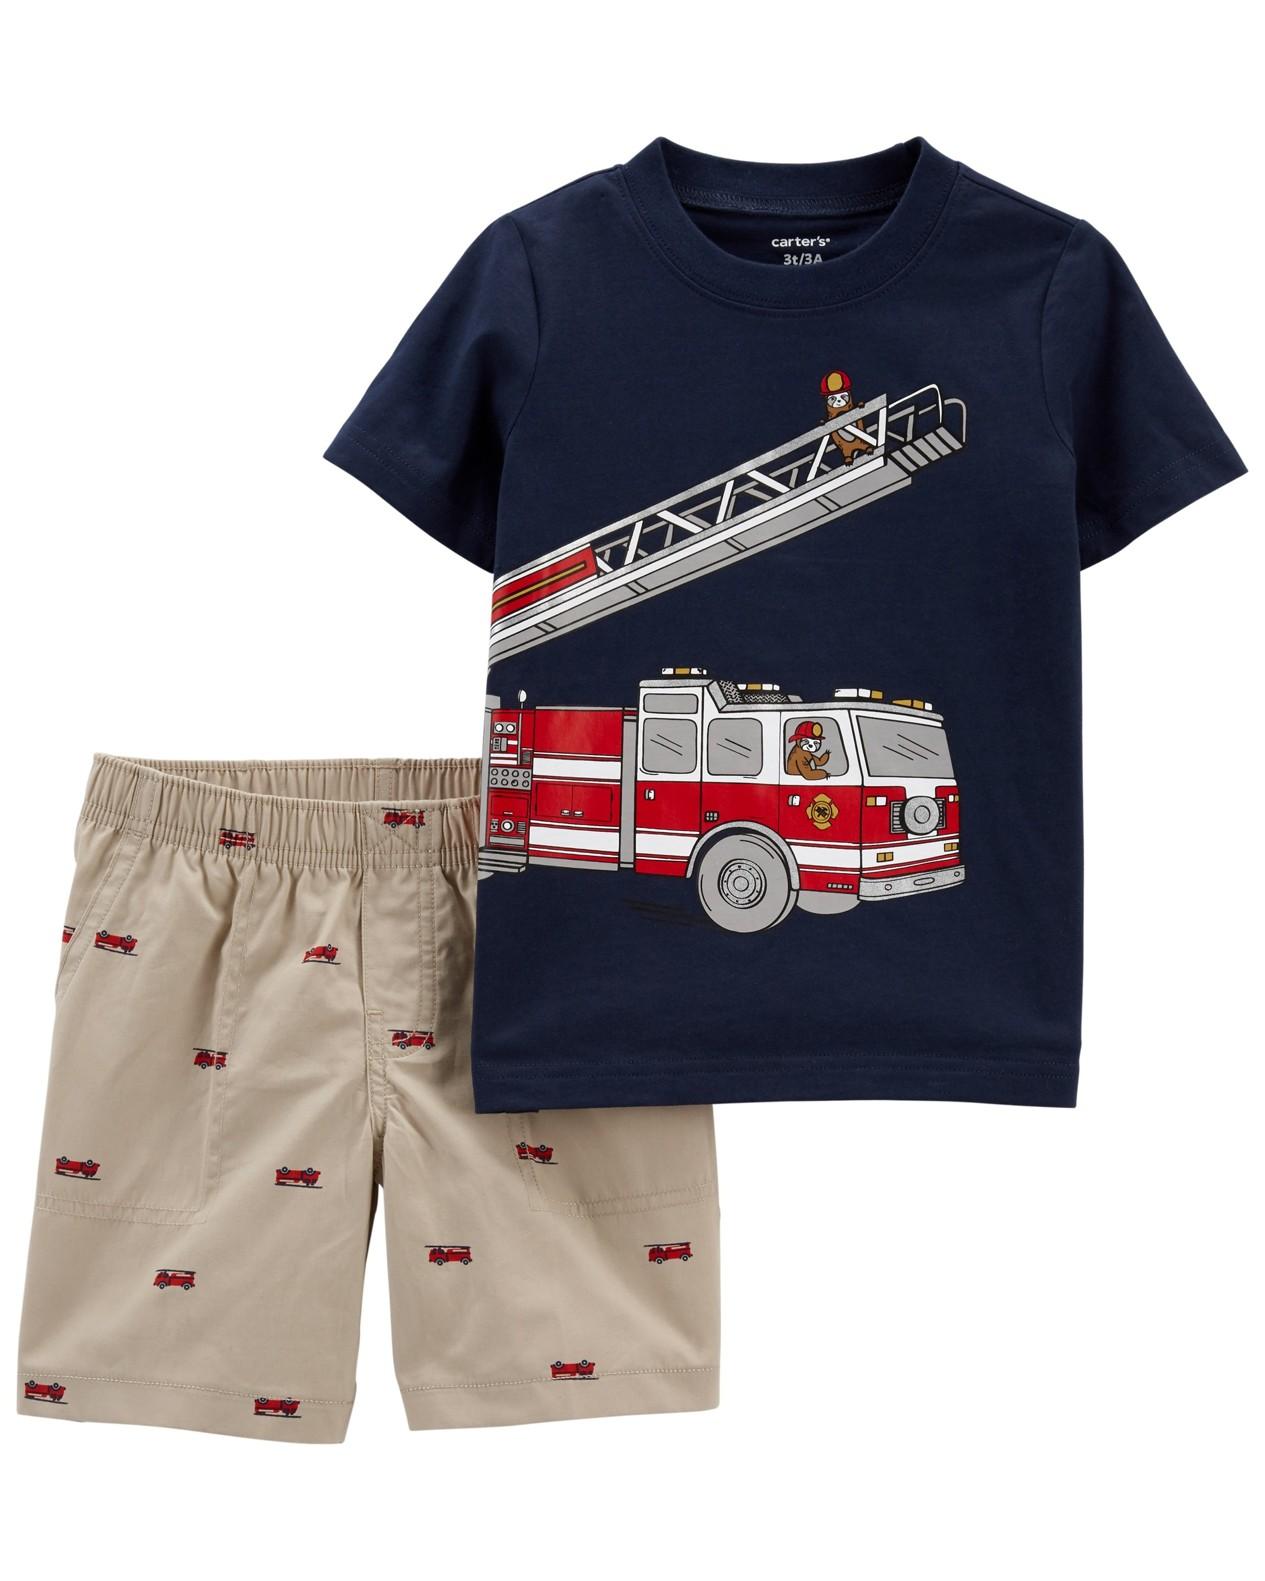 CARTERS CARTER'S Set 2dílný tričko kr. rukáv, kalhoty kr. Firetruck chlapec 3 m, vel. 62